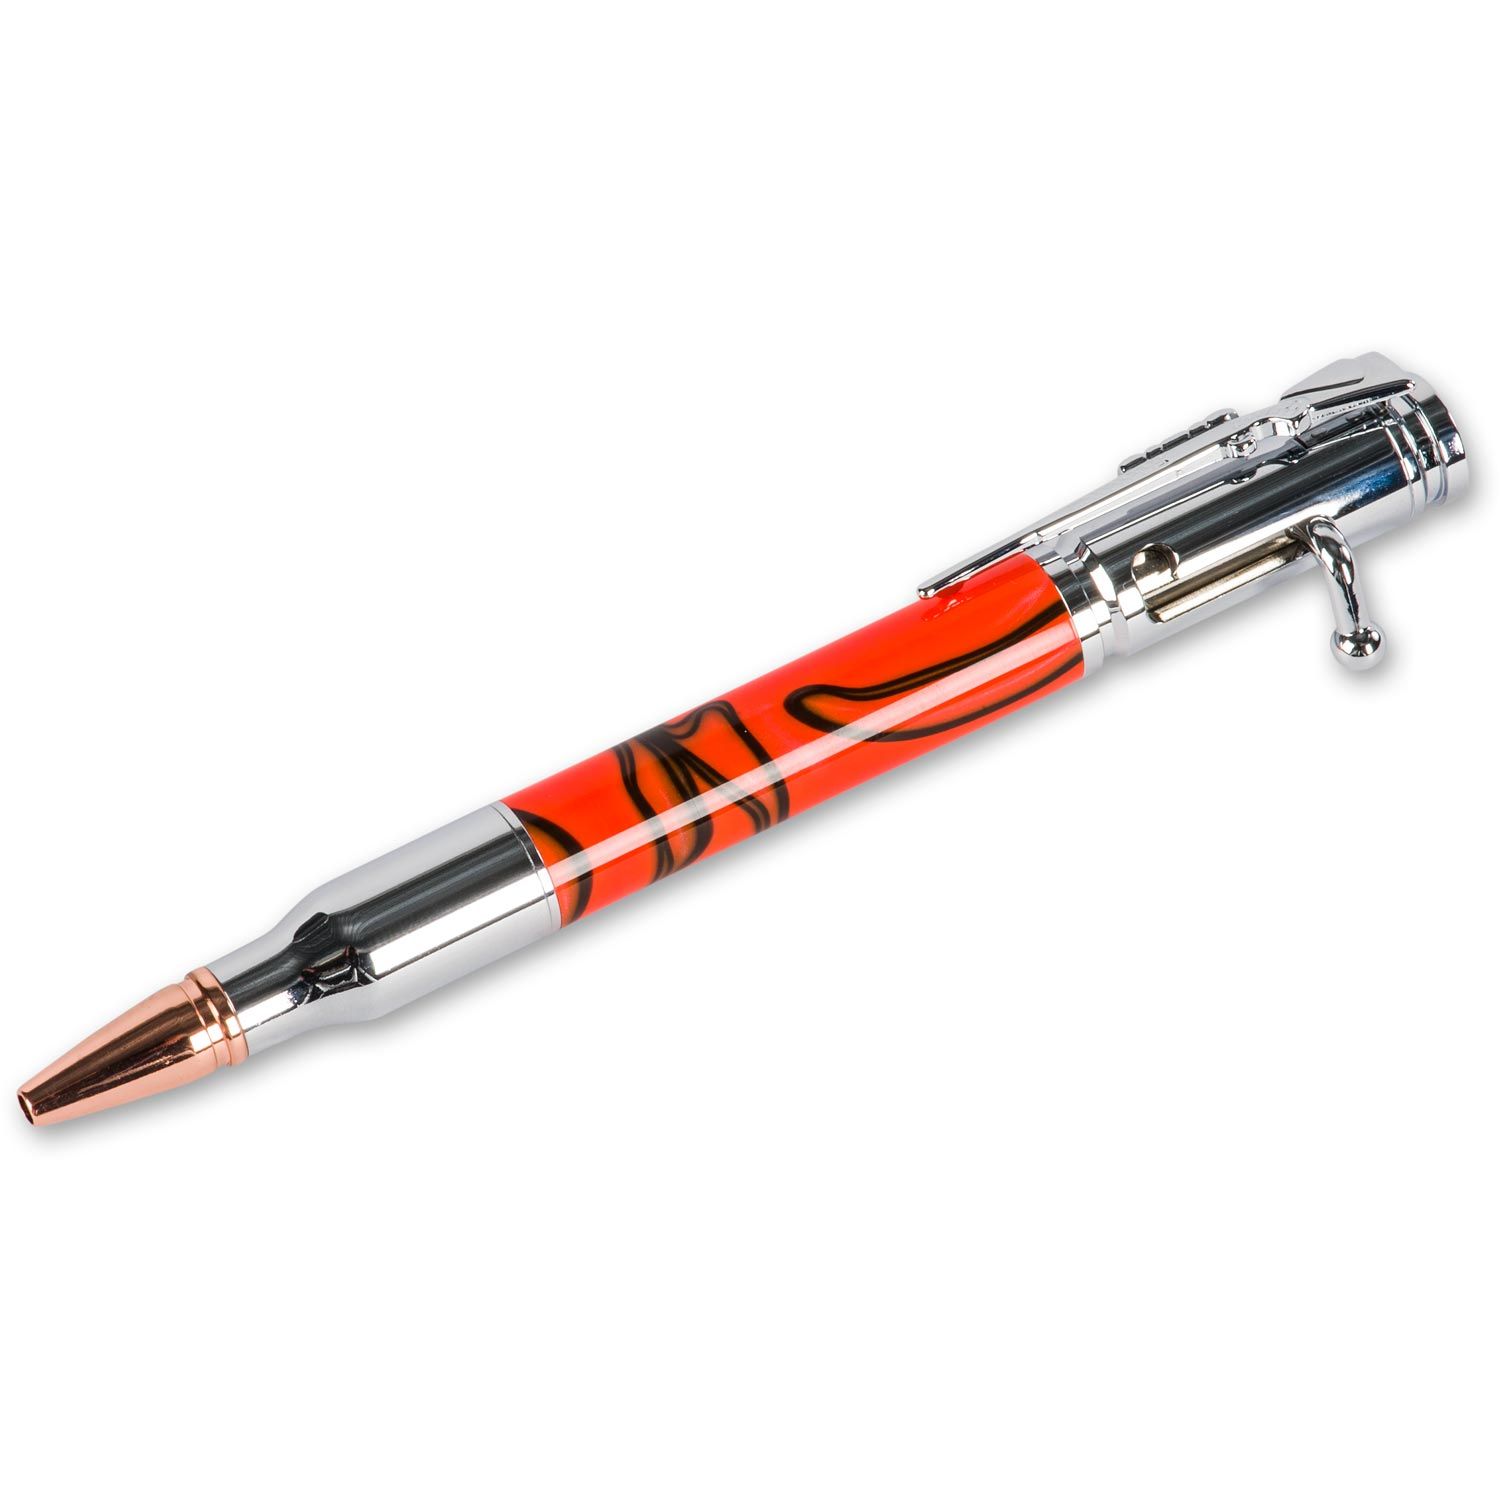 Pens kit. Ручка click. Pen Kit. Bastion Bolt Action ручка.